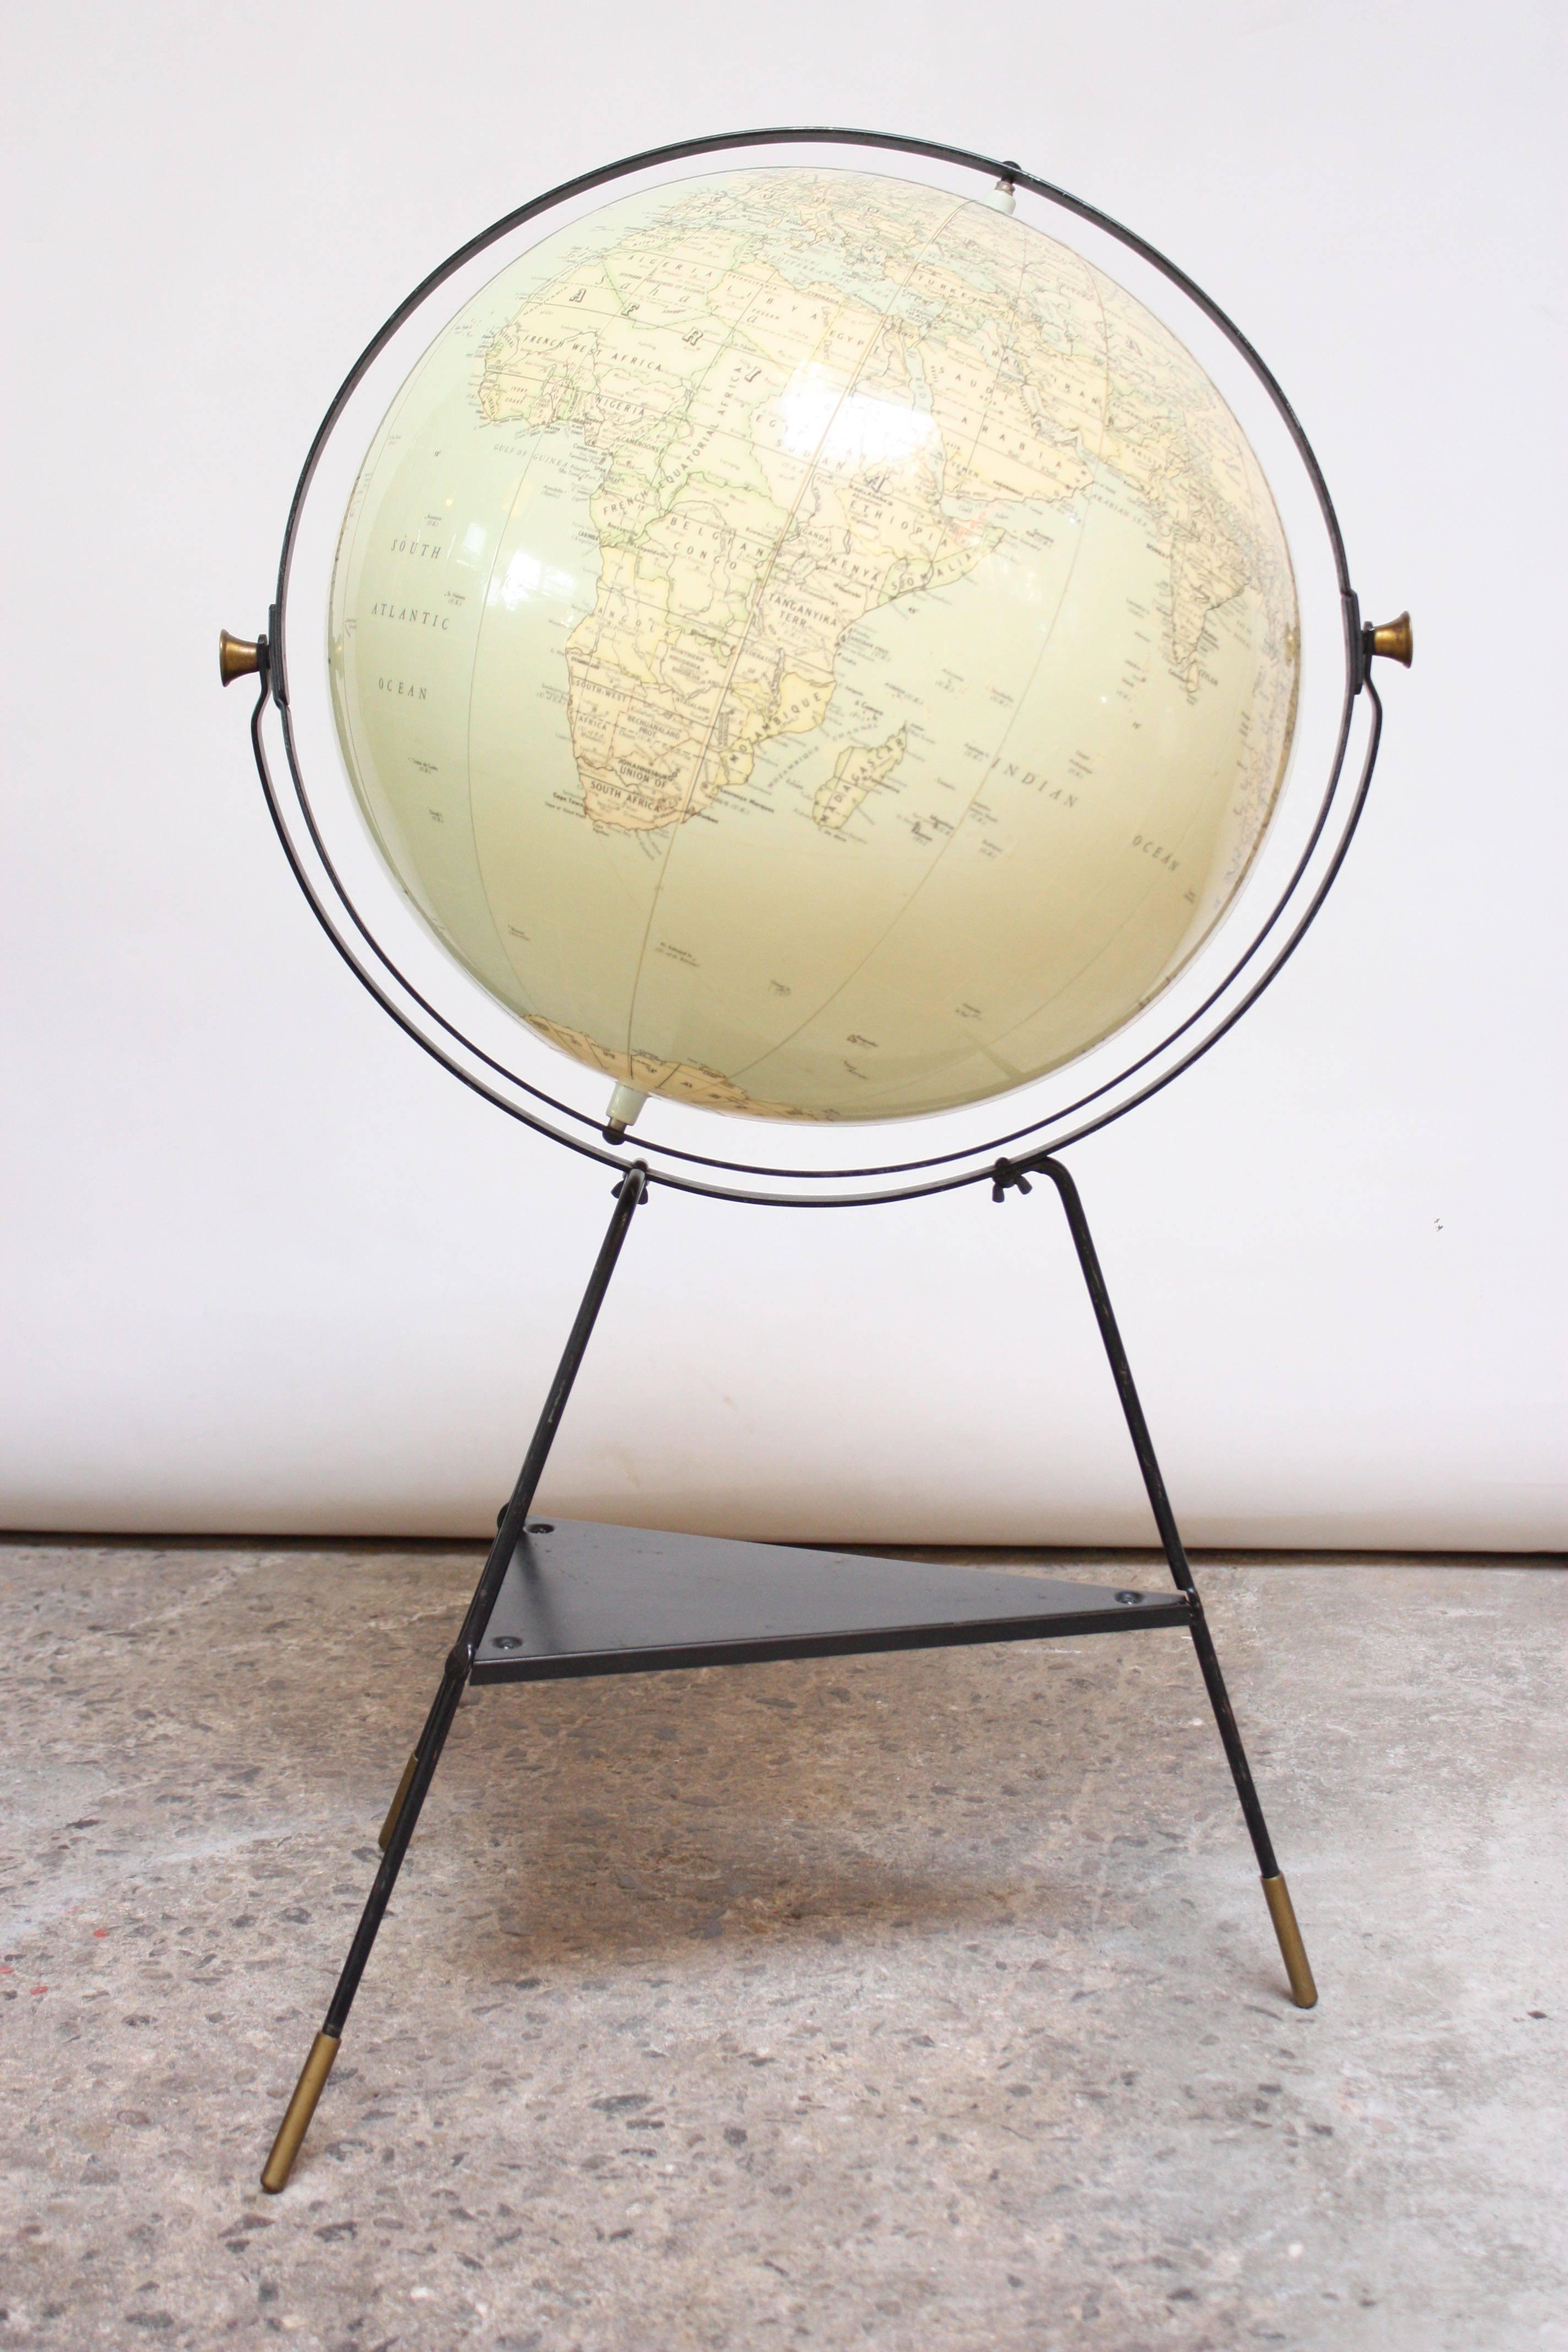 Hammond's International Globe (um 1955), bestehend aus einem aufblasbaren Globus auf einem lackierten Metallstativ. Bilder und Schrift sind groß und sehr gut lesbar. Dieser Vinyl-Globus, der so haltbar ist wie ein Strandball, lässt sich durch einen